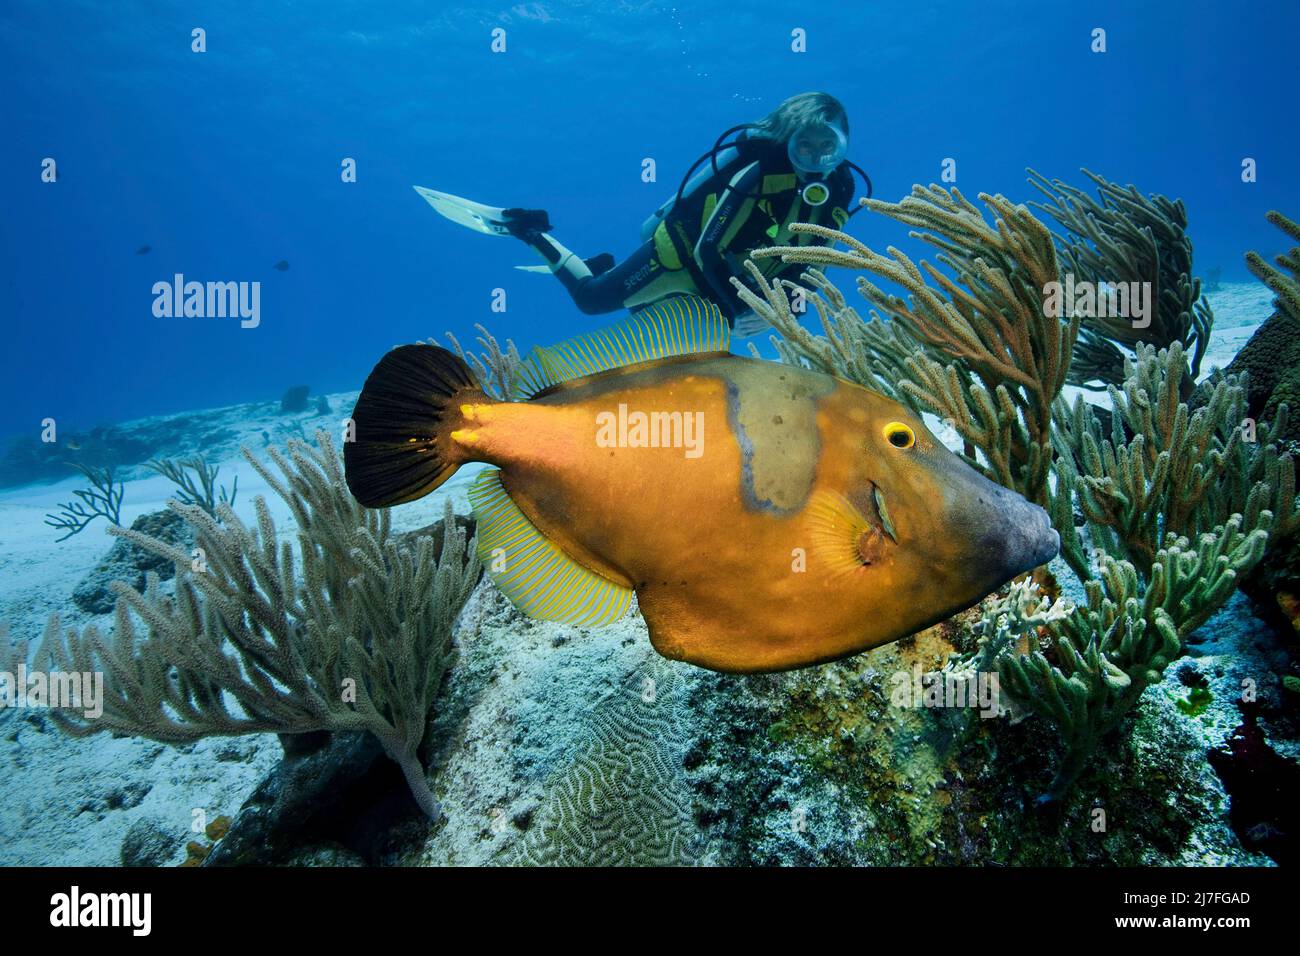 Plongée sous-marine et un corégone blanc américain (Cantherhines macrocerus), dans un récif de corail des caraïbes, Cozumel, Mexique, Caraïbes, mer des Caraïbes Banque D'Images